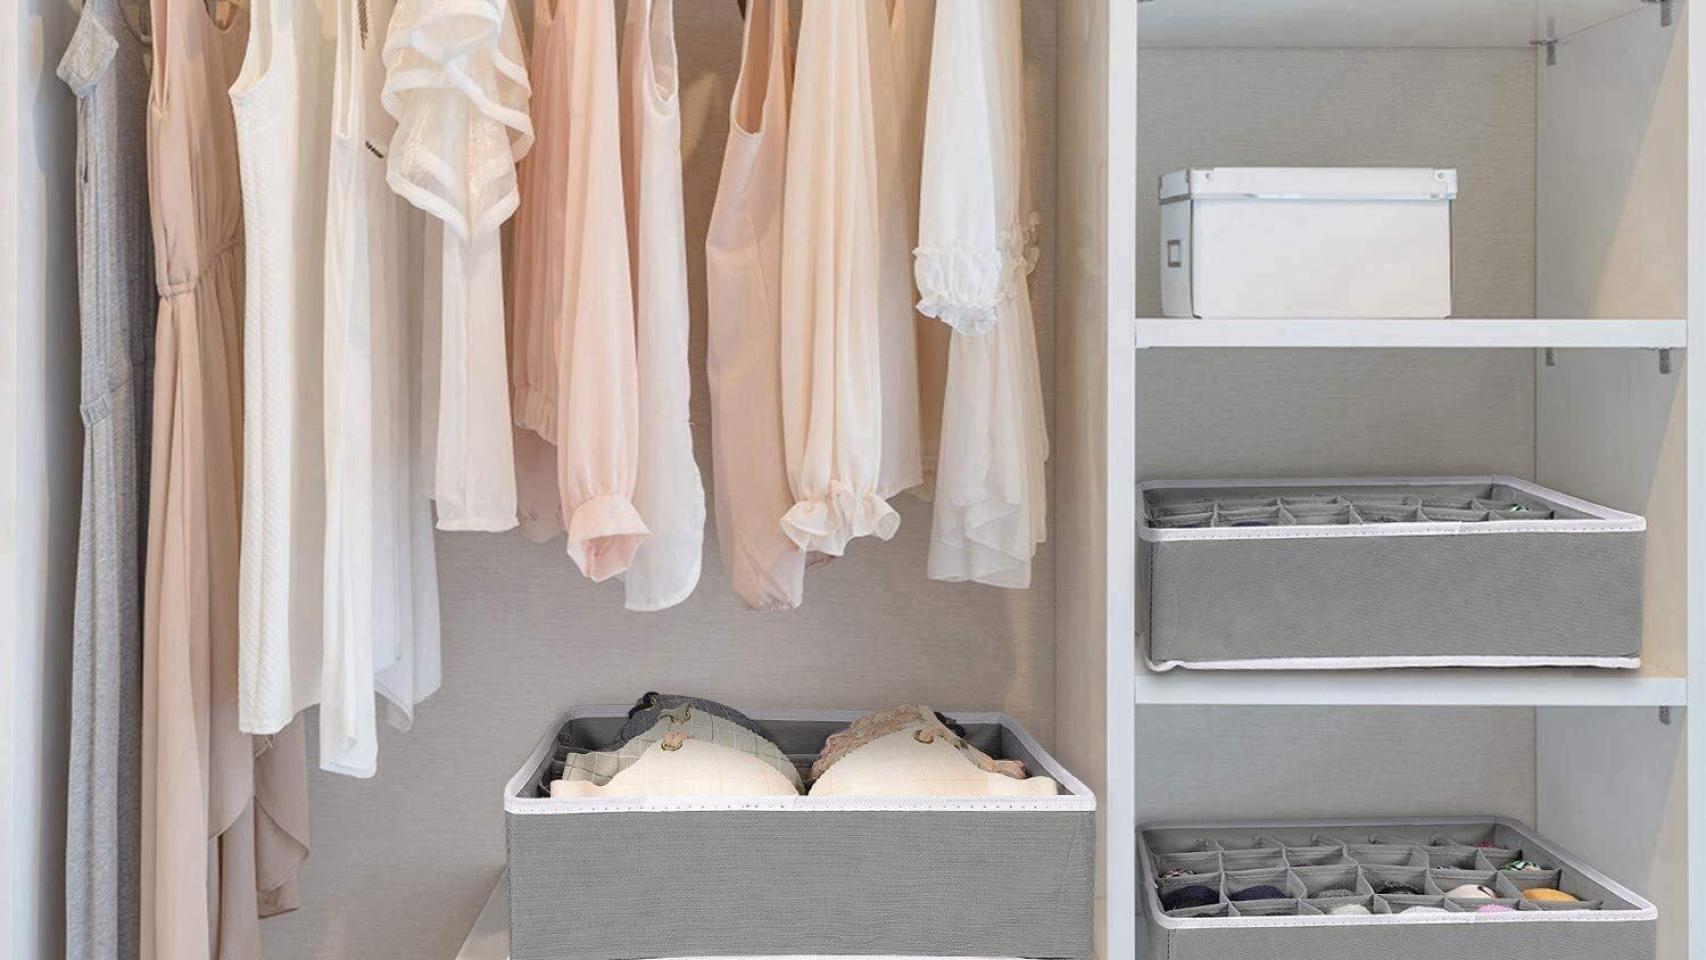 Diez trucos para mantener tu armario más ordenado